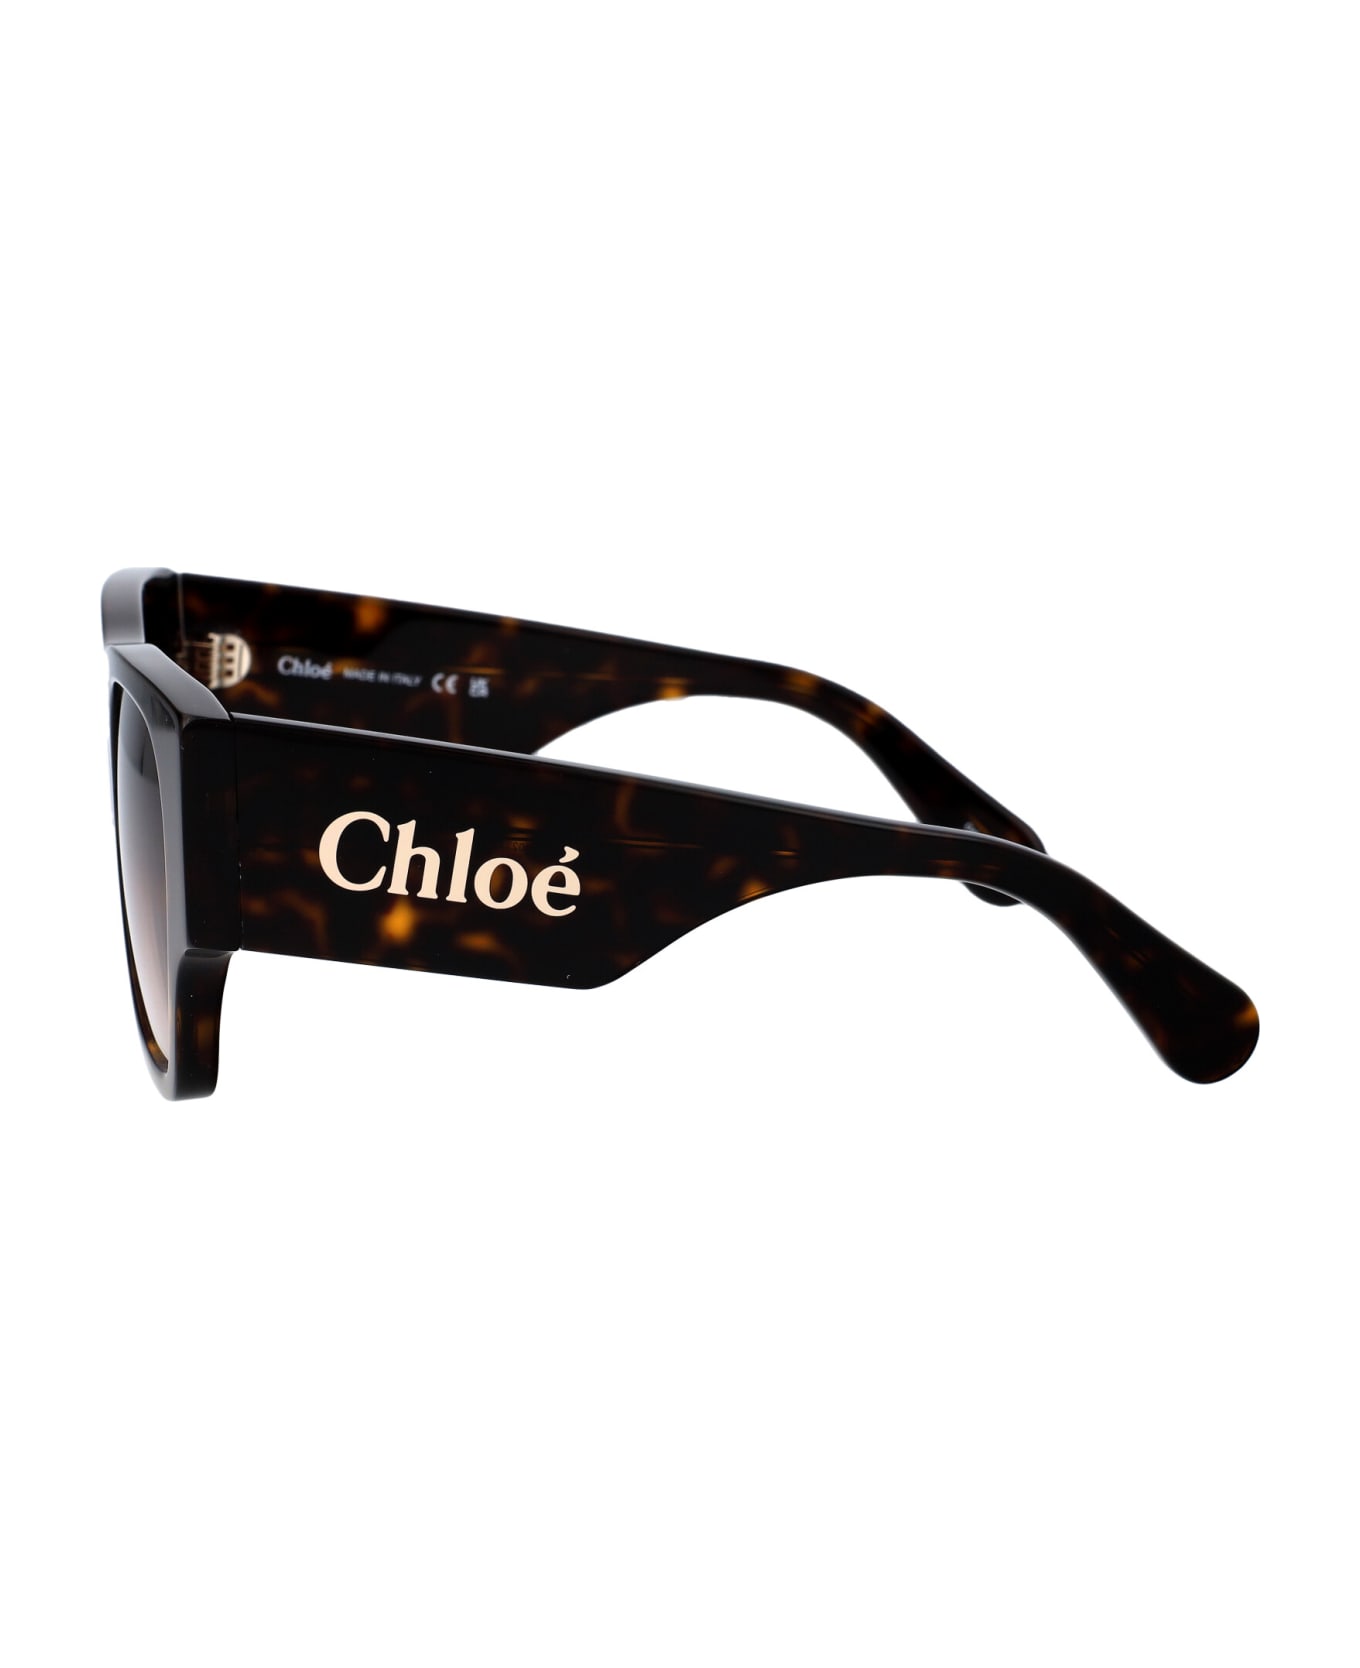 Chloé Eyewear Ch0233s Sunglasses - 002 HAVANA HAVANA BROWN